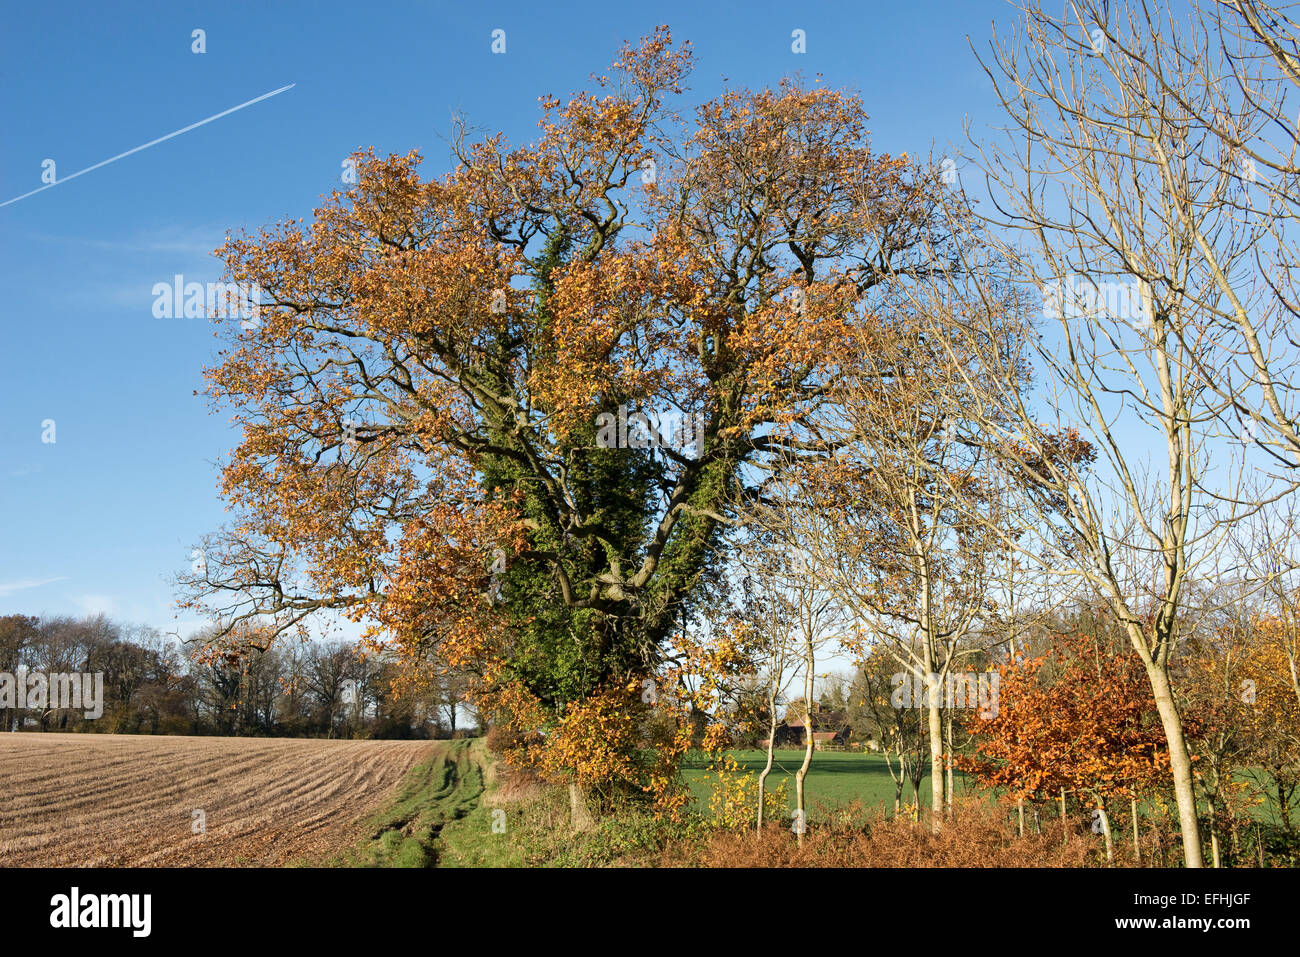 Ackerland, Bäume und eine Eiche mit Efeu und Blätter in Herbstfärbung an einem schönen Tag mit blauem Himmel, Berkshire, England, UK, nicht Stockfoto